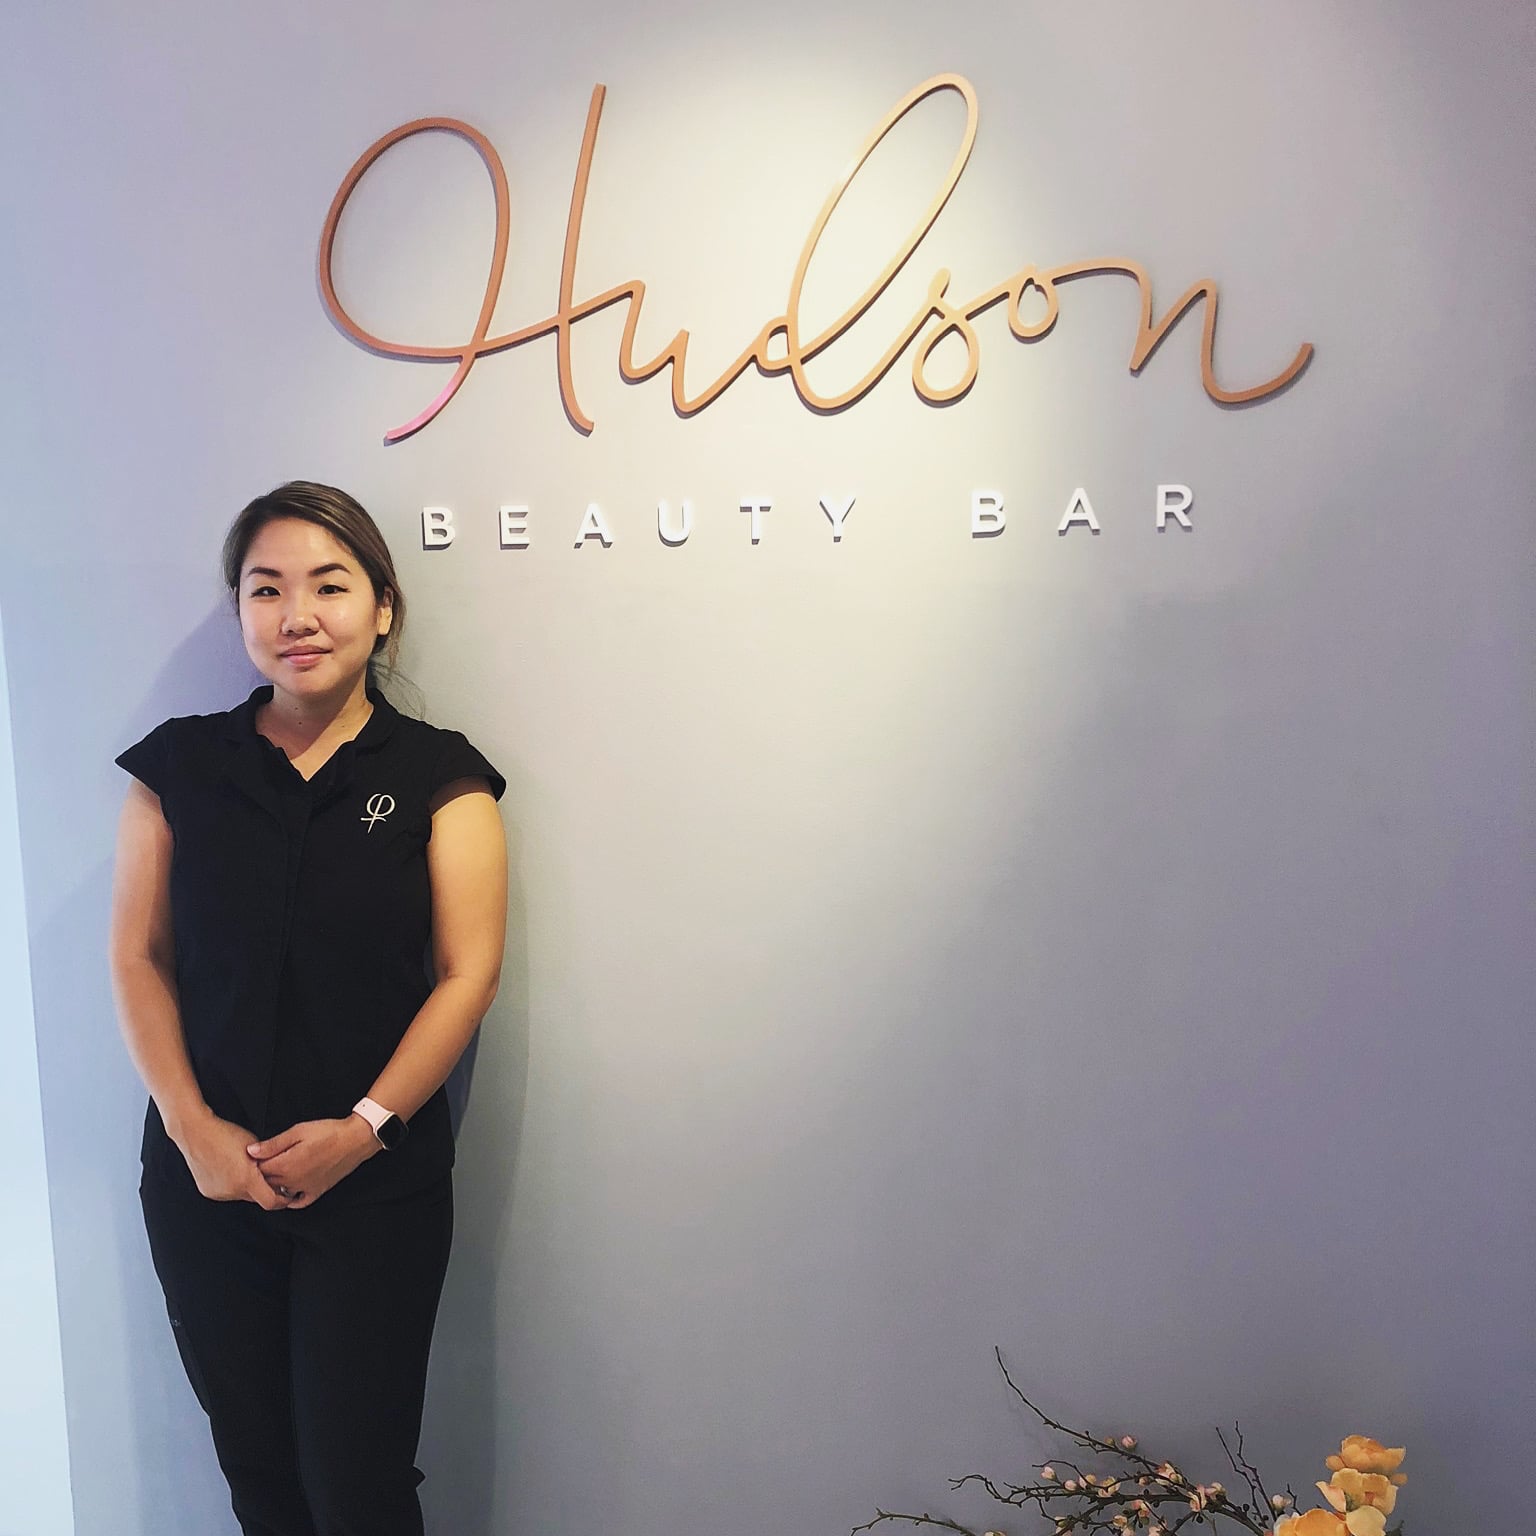 hudson beauty bar owner